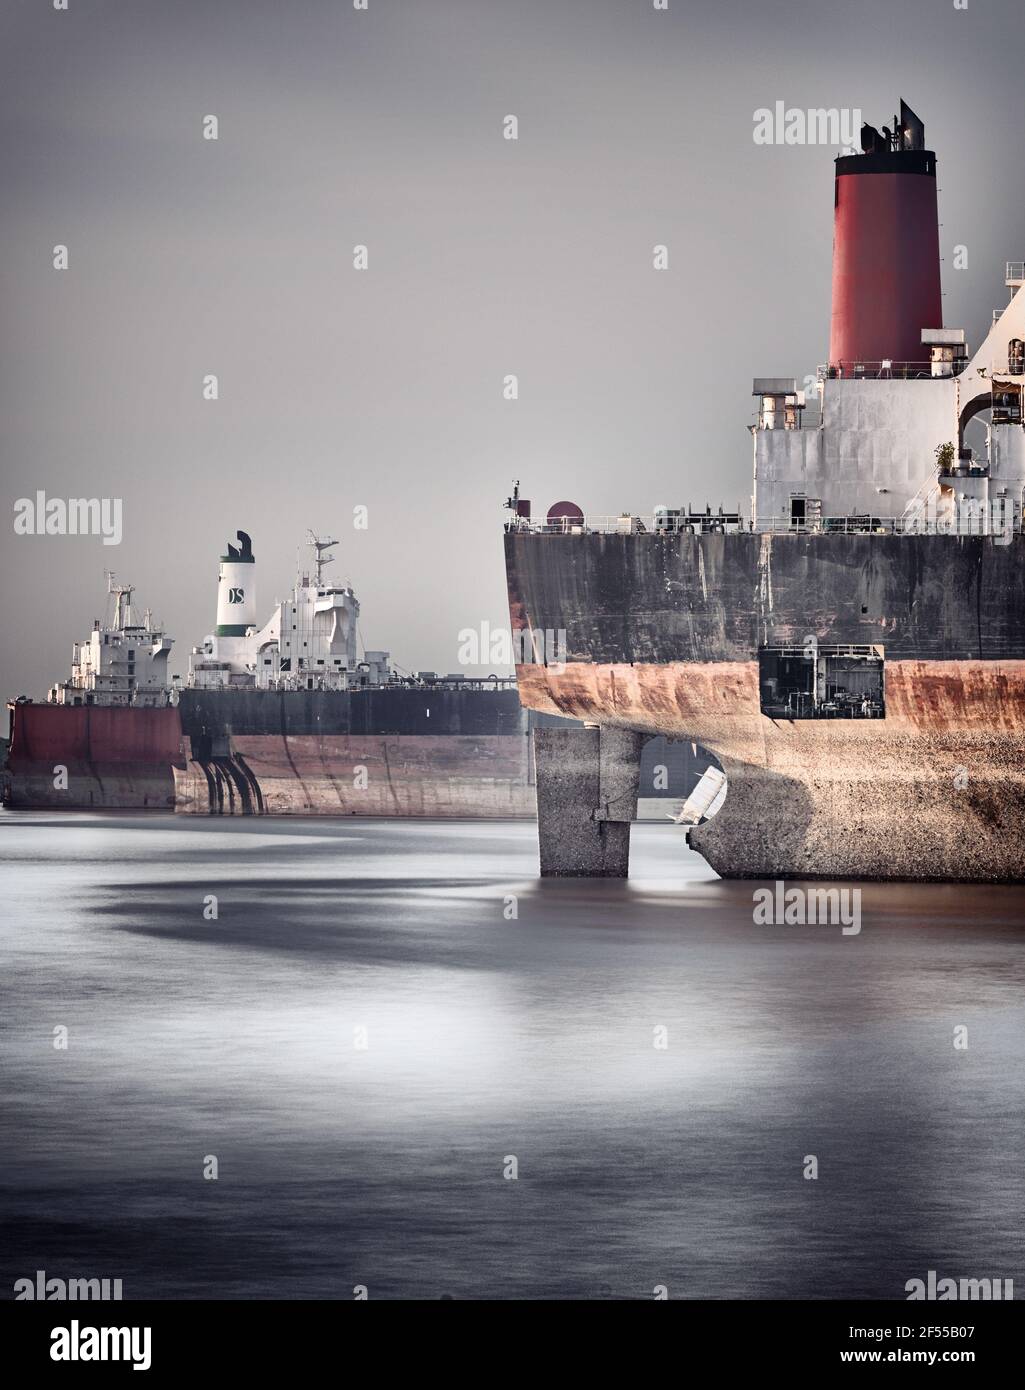 Kumira Ship breaking yard Stock Photo